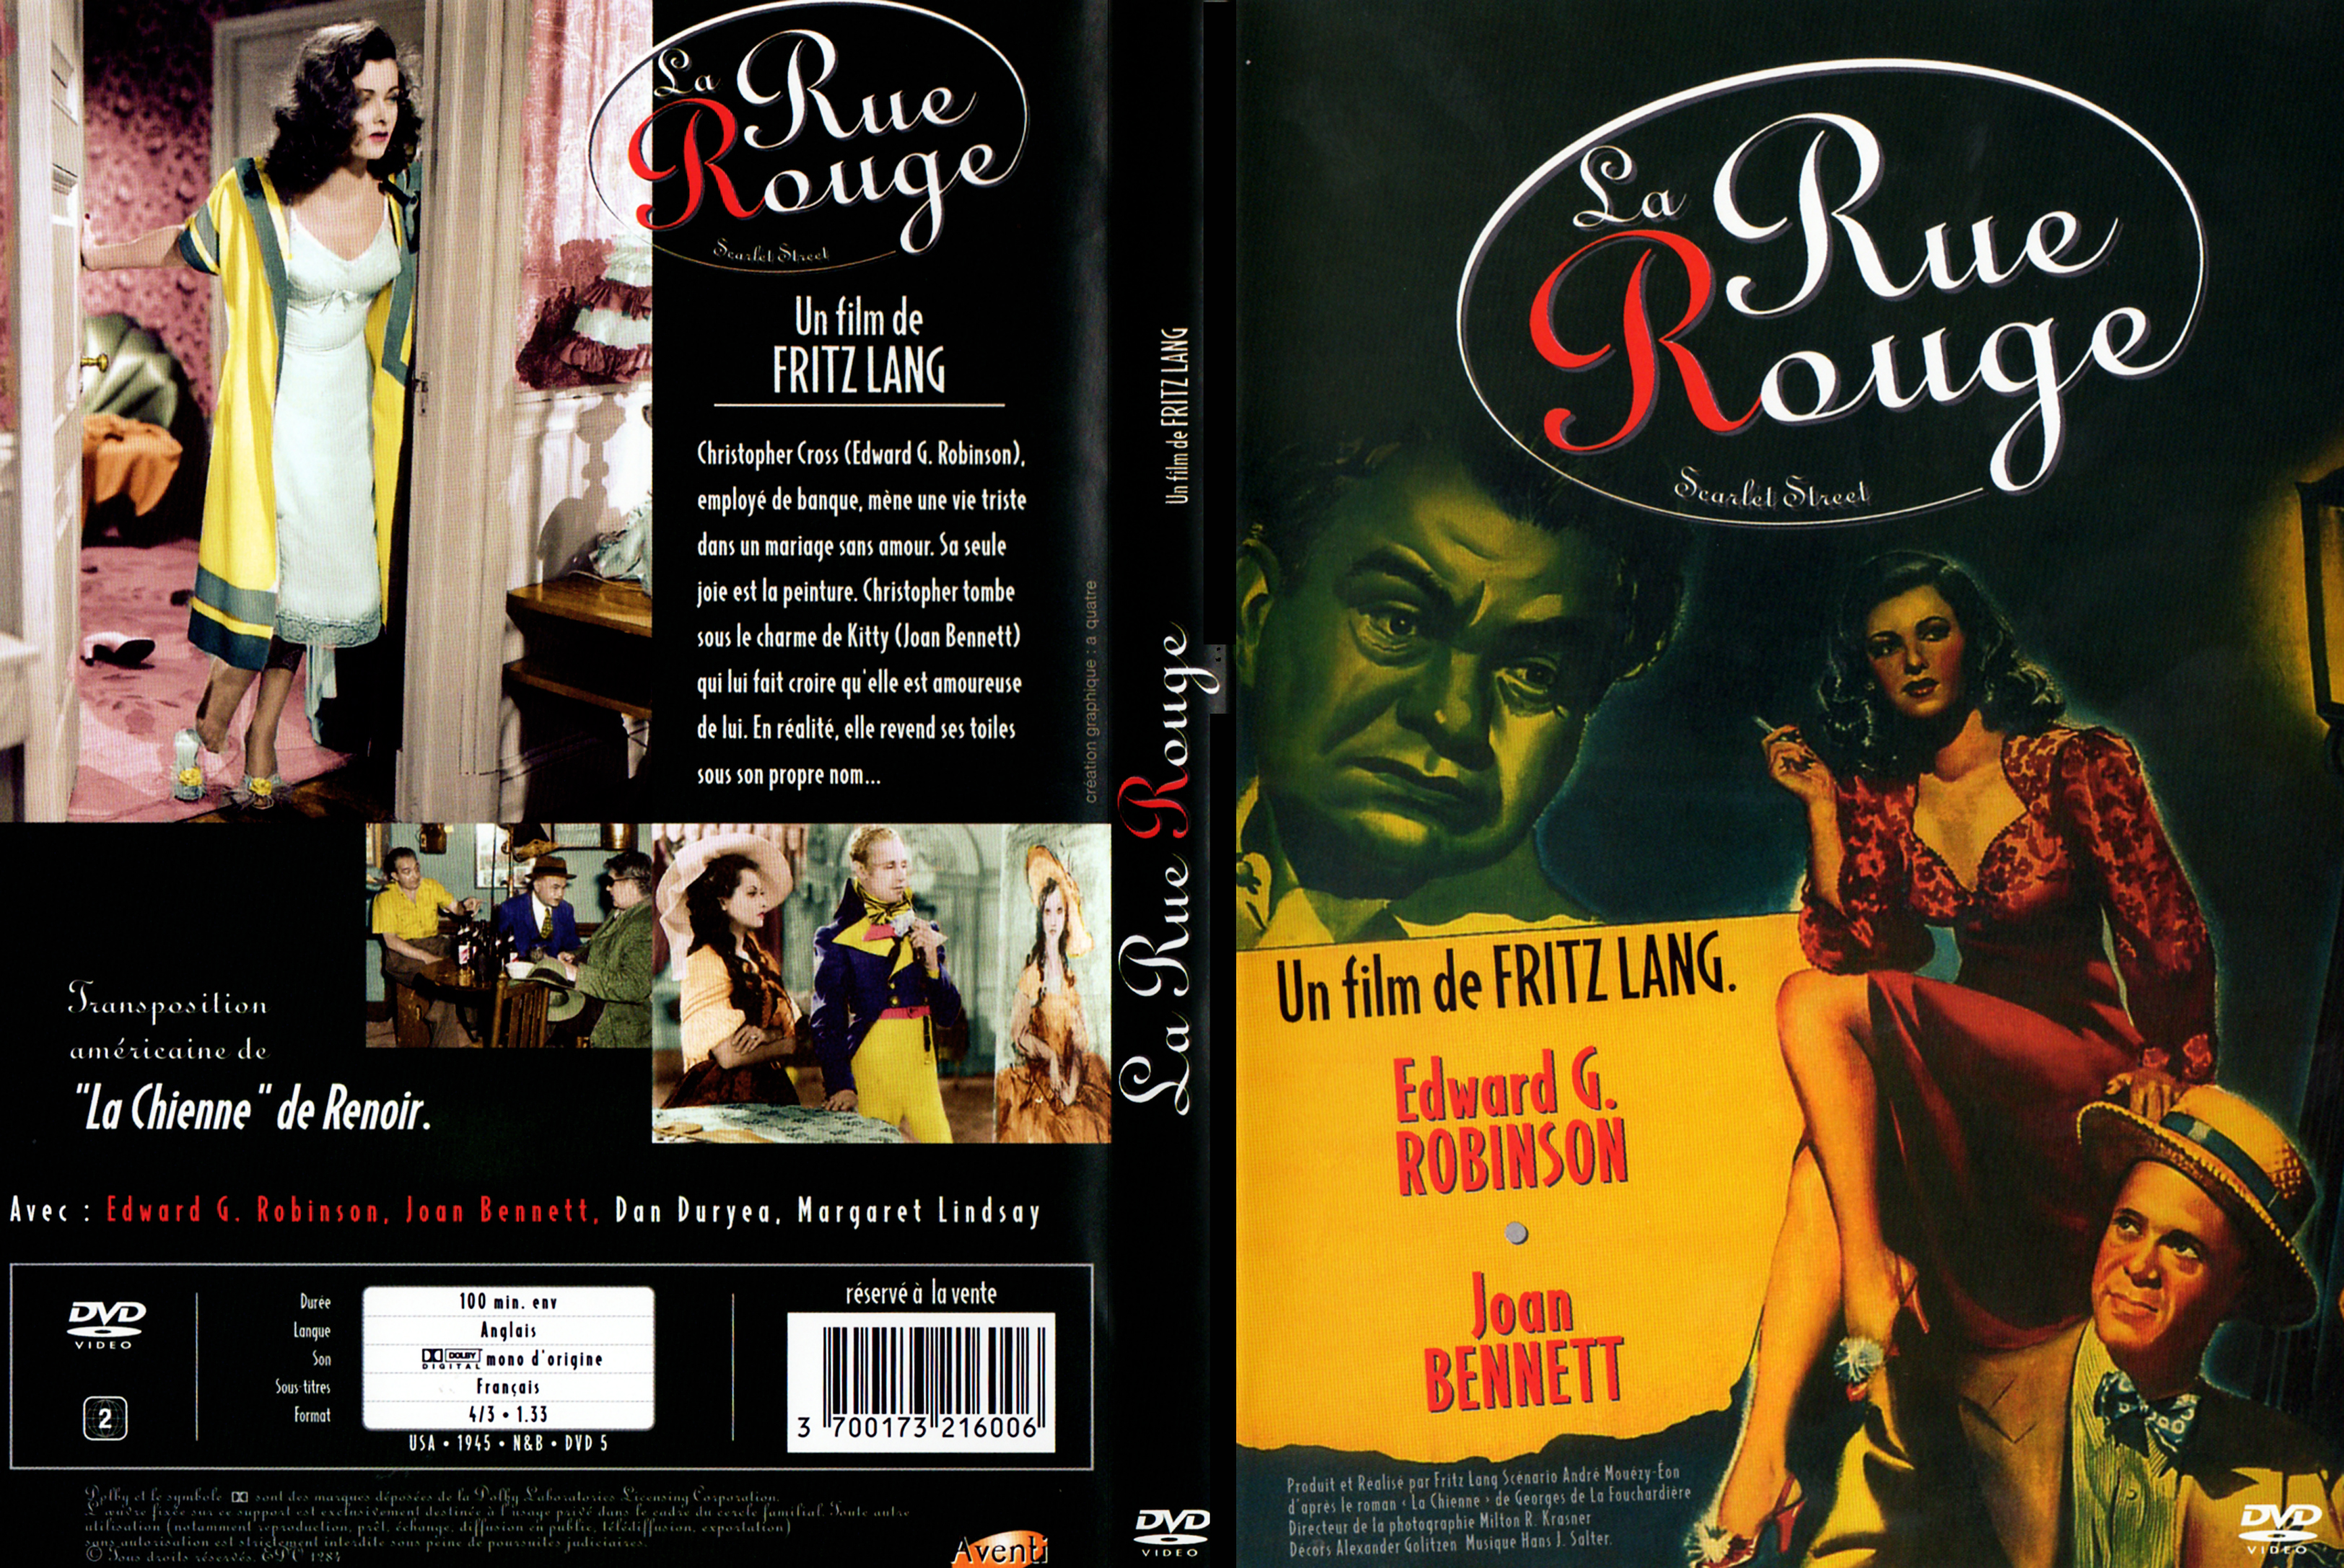 Jaquette DVD La rue rouge